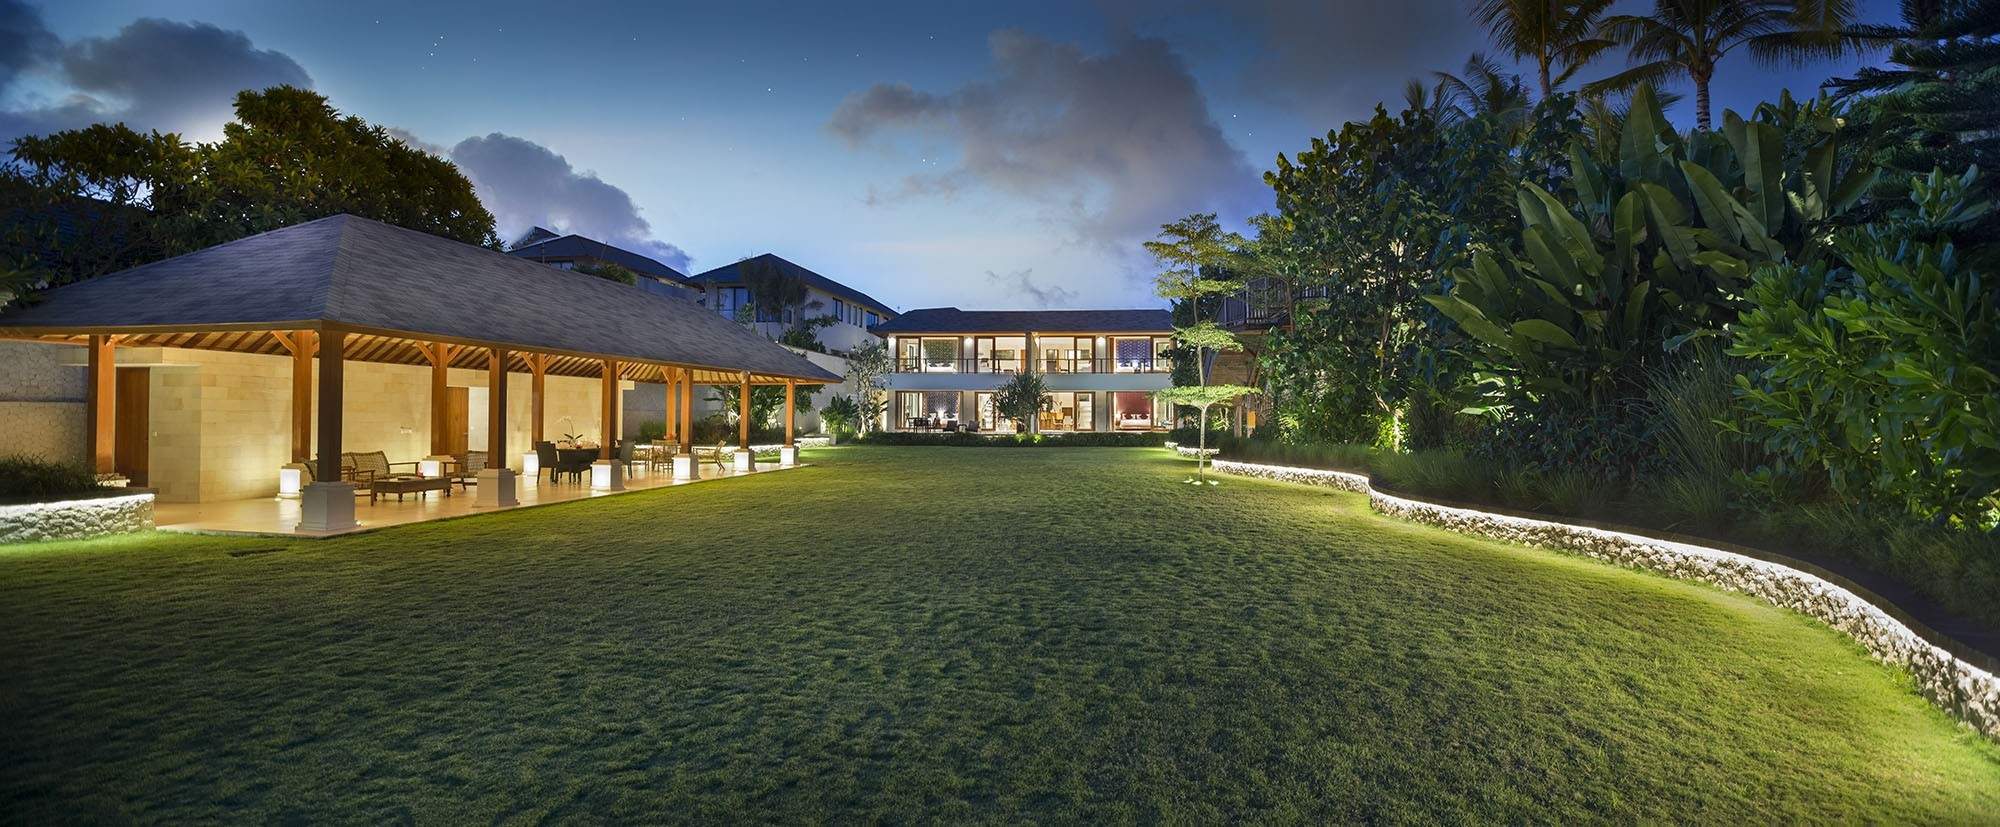 Rent villa Maya, Indonesia, Bali, Uluvatu | Villacarte